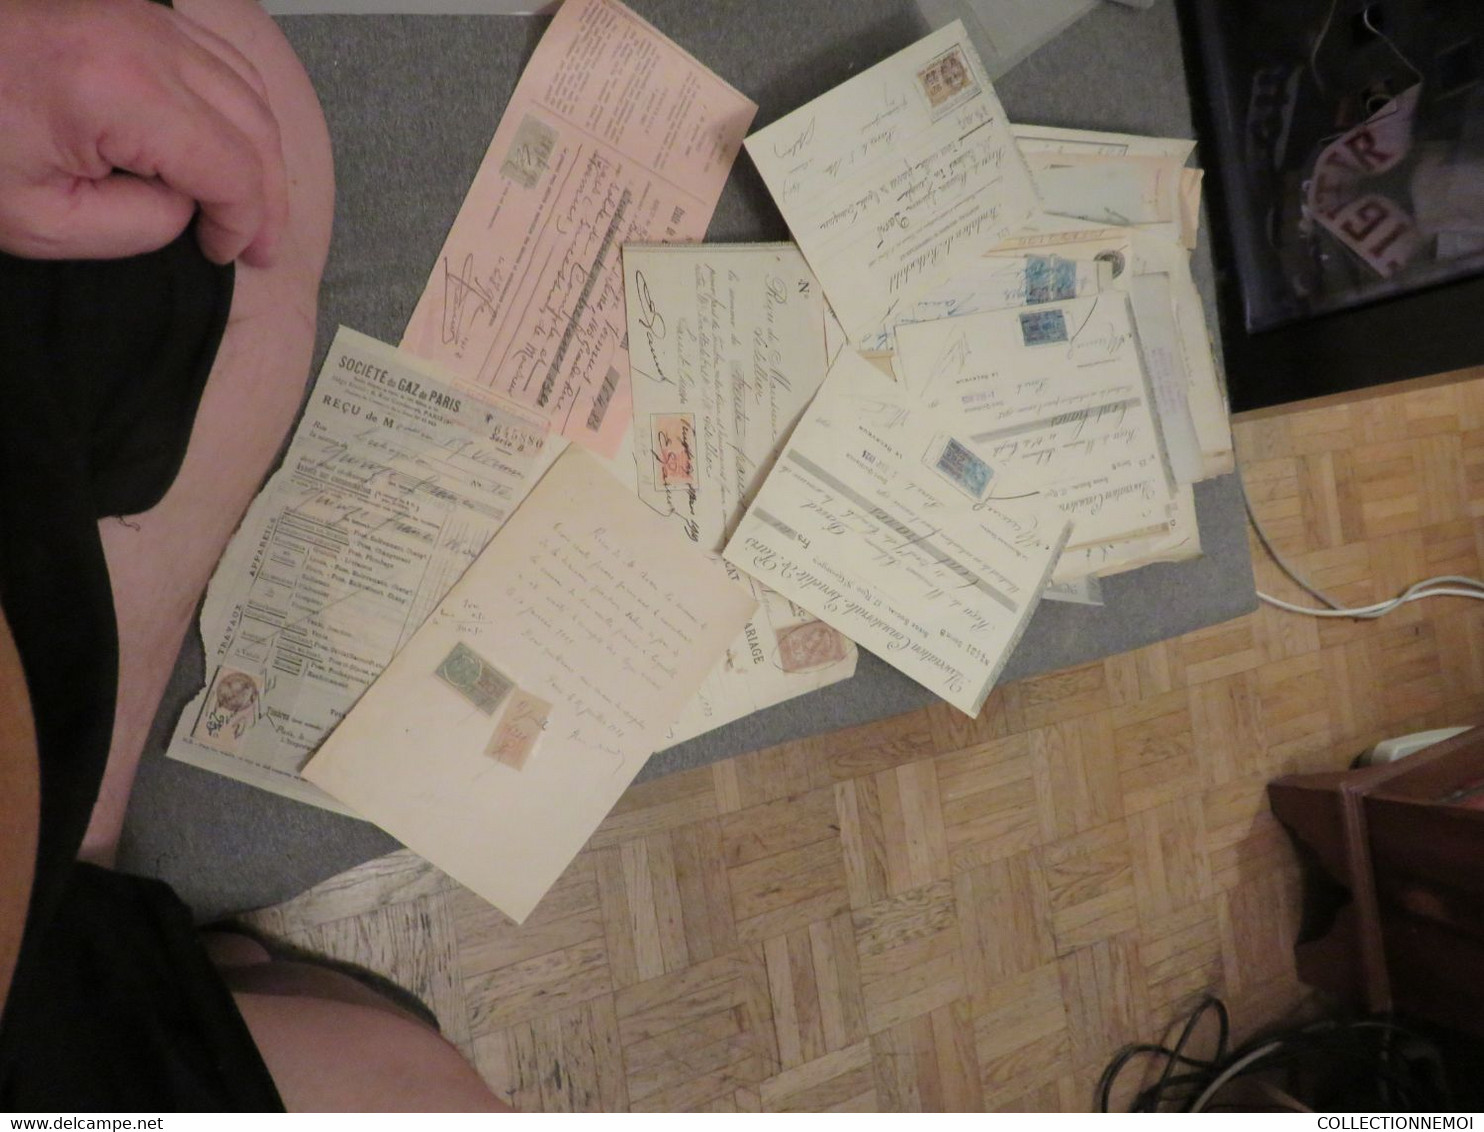 FISCAUX,,,,, des centaines de timbres et documents fiscaux ,pése 1 kilo 200 grammes